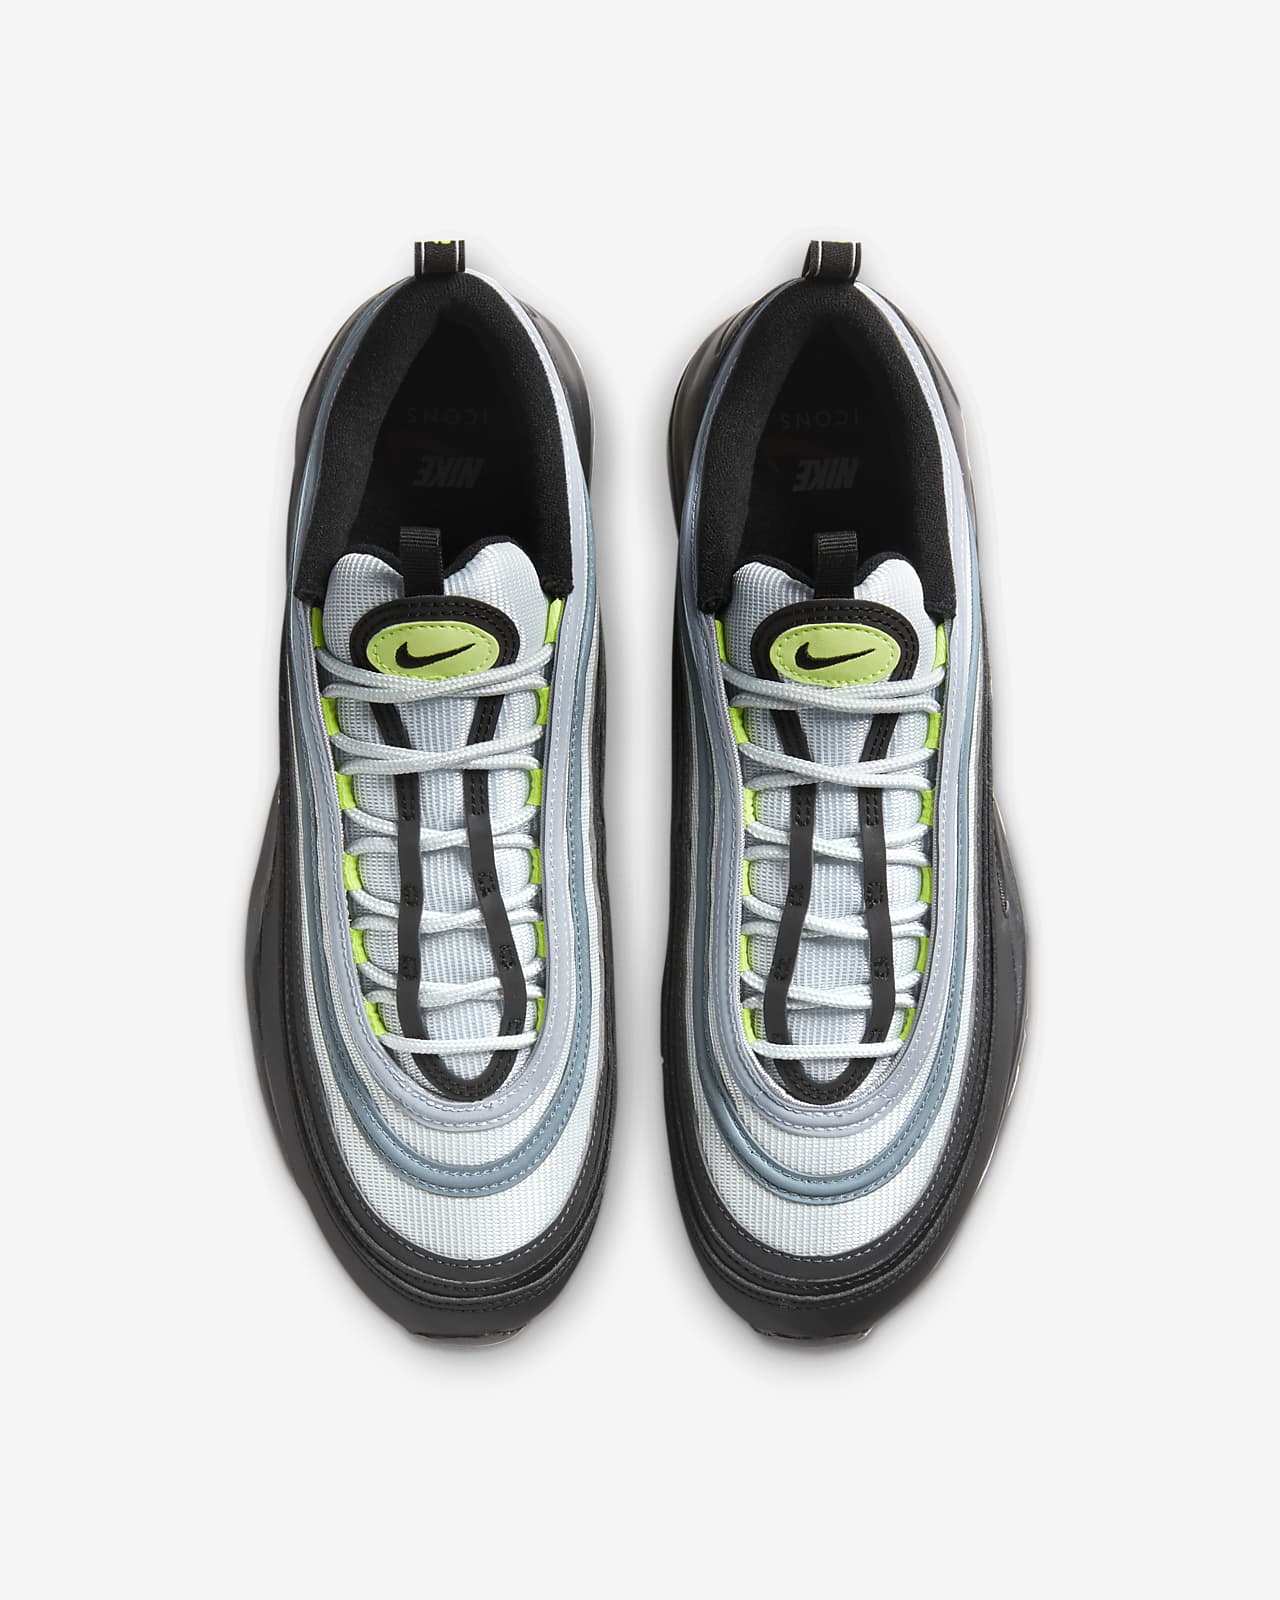 Concurso extraer Pacer Nike Air Max 97 Men's Shoes. Nike.com